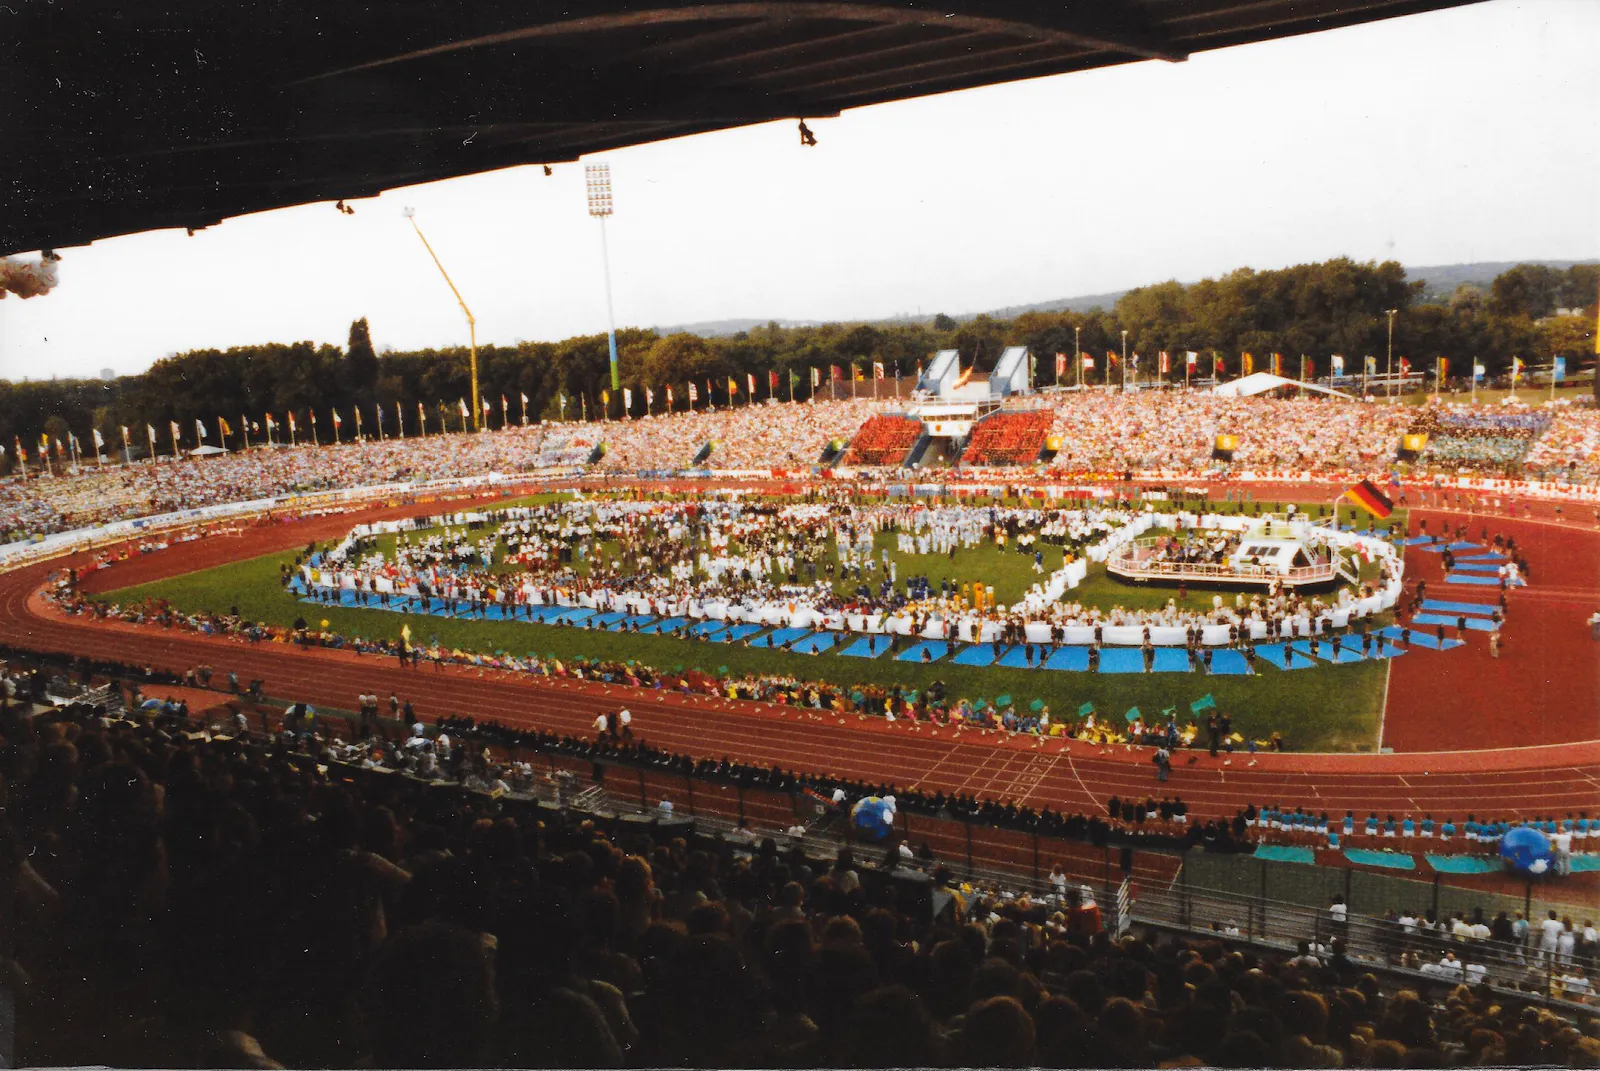 Stadioninneraum des Wedau-Stadions in Duisburg, bei der Eröffnung der Universiade 1989. Blick von Haupttribüne auf das Spielfeld mit der Eröffnungsshow.